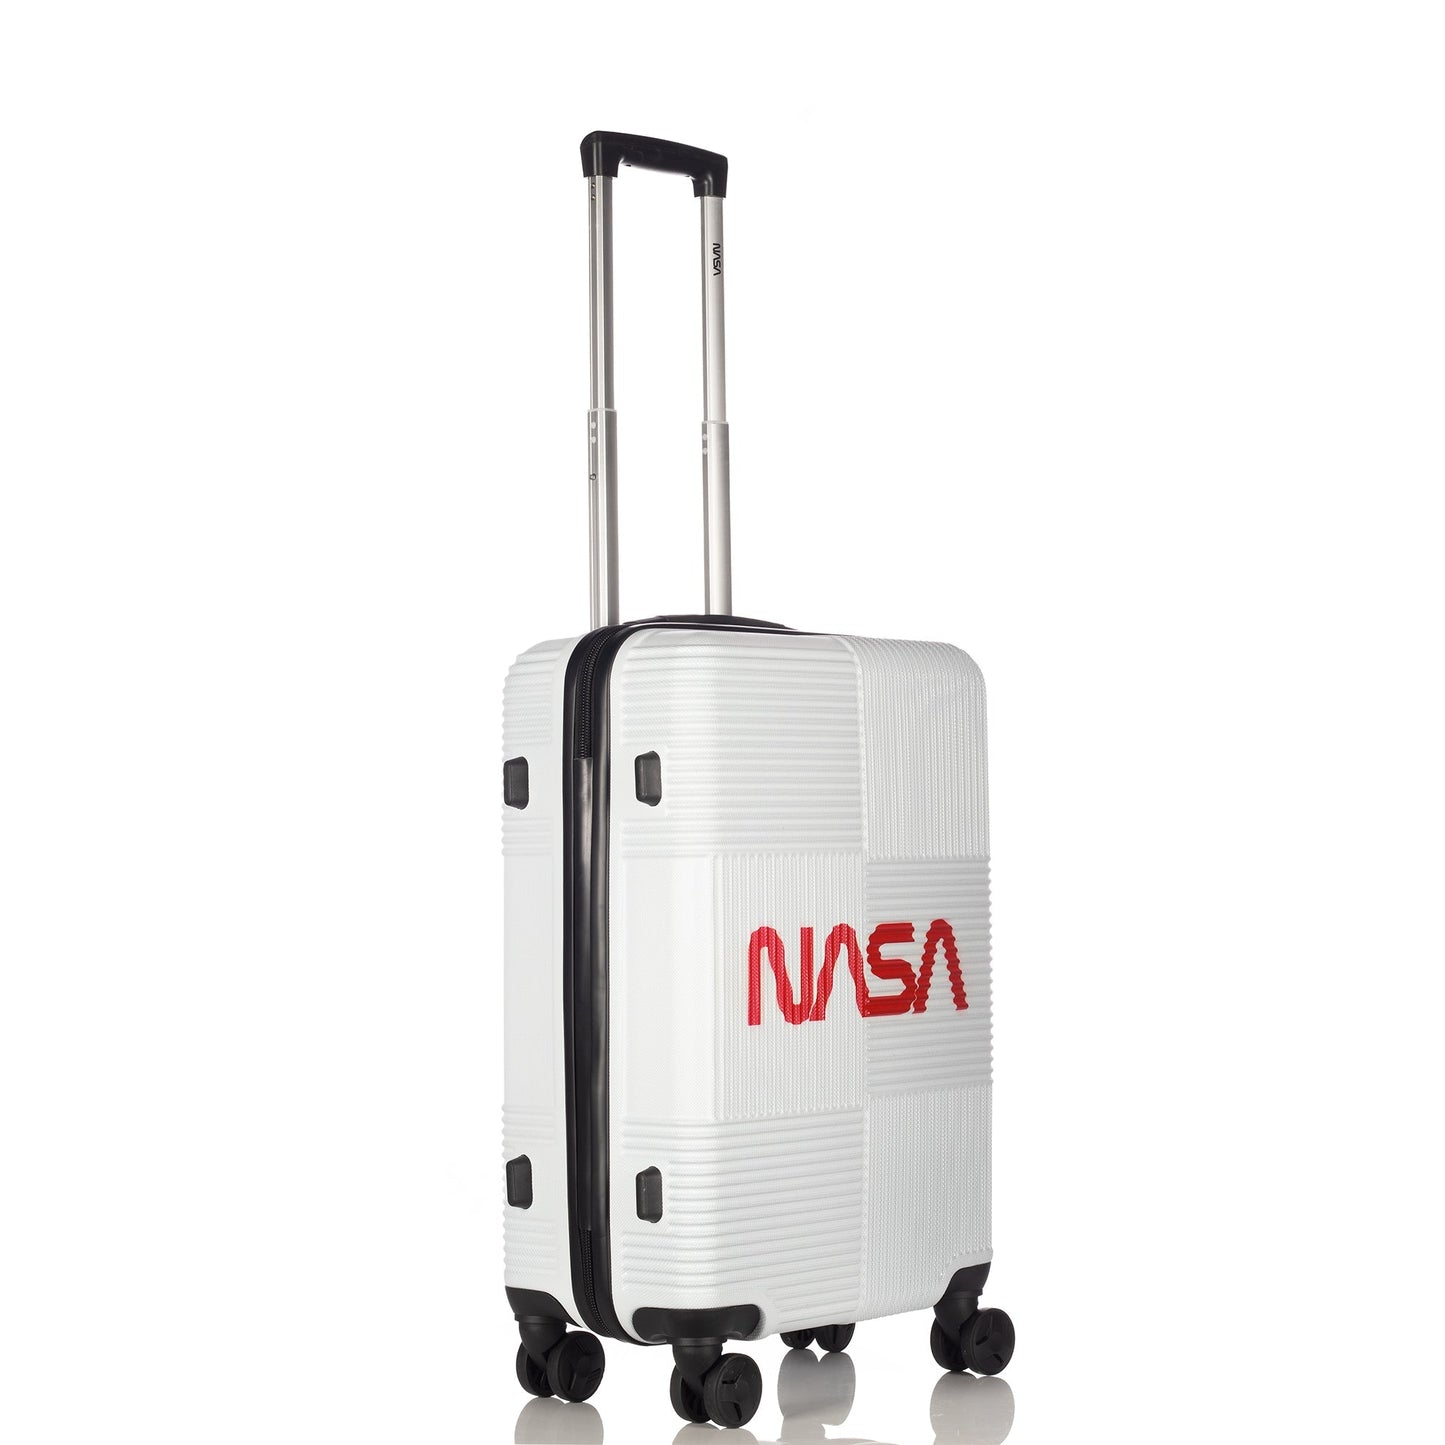 Nasa Orvit White 3 pieces luggage set